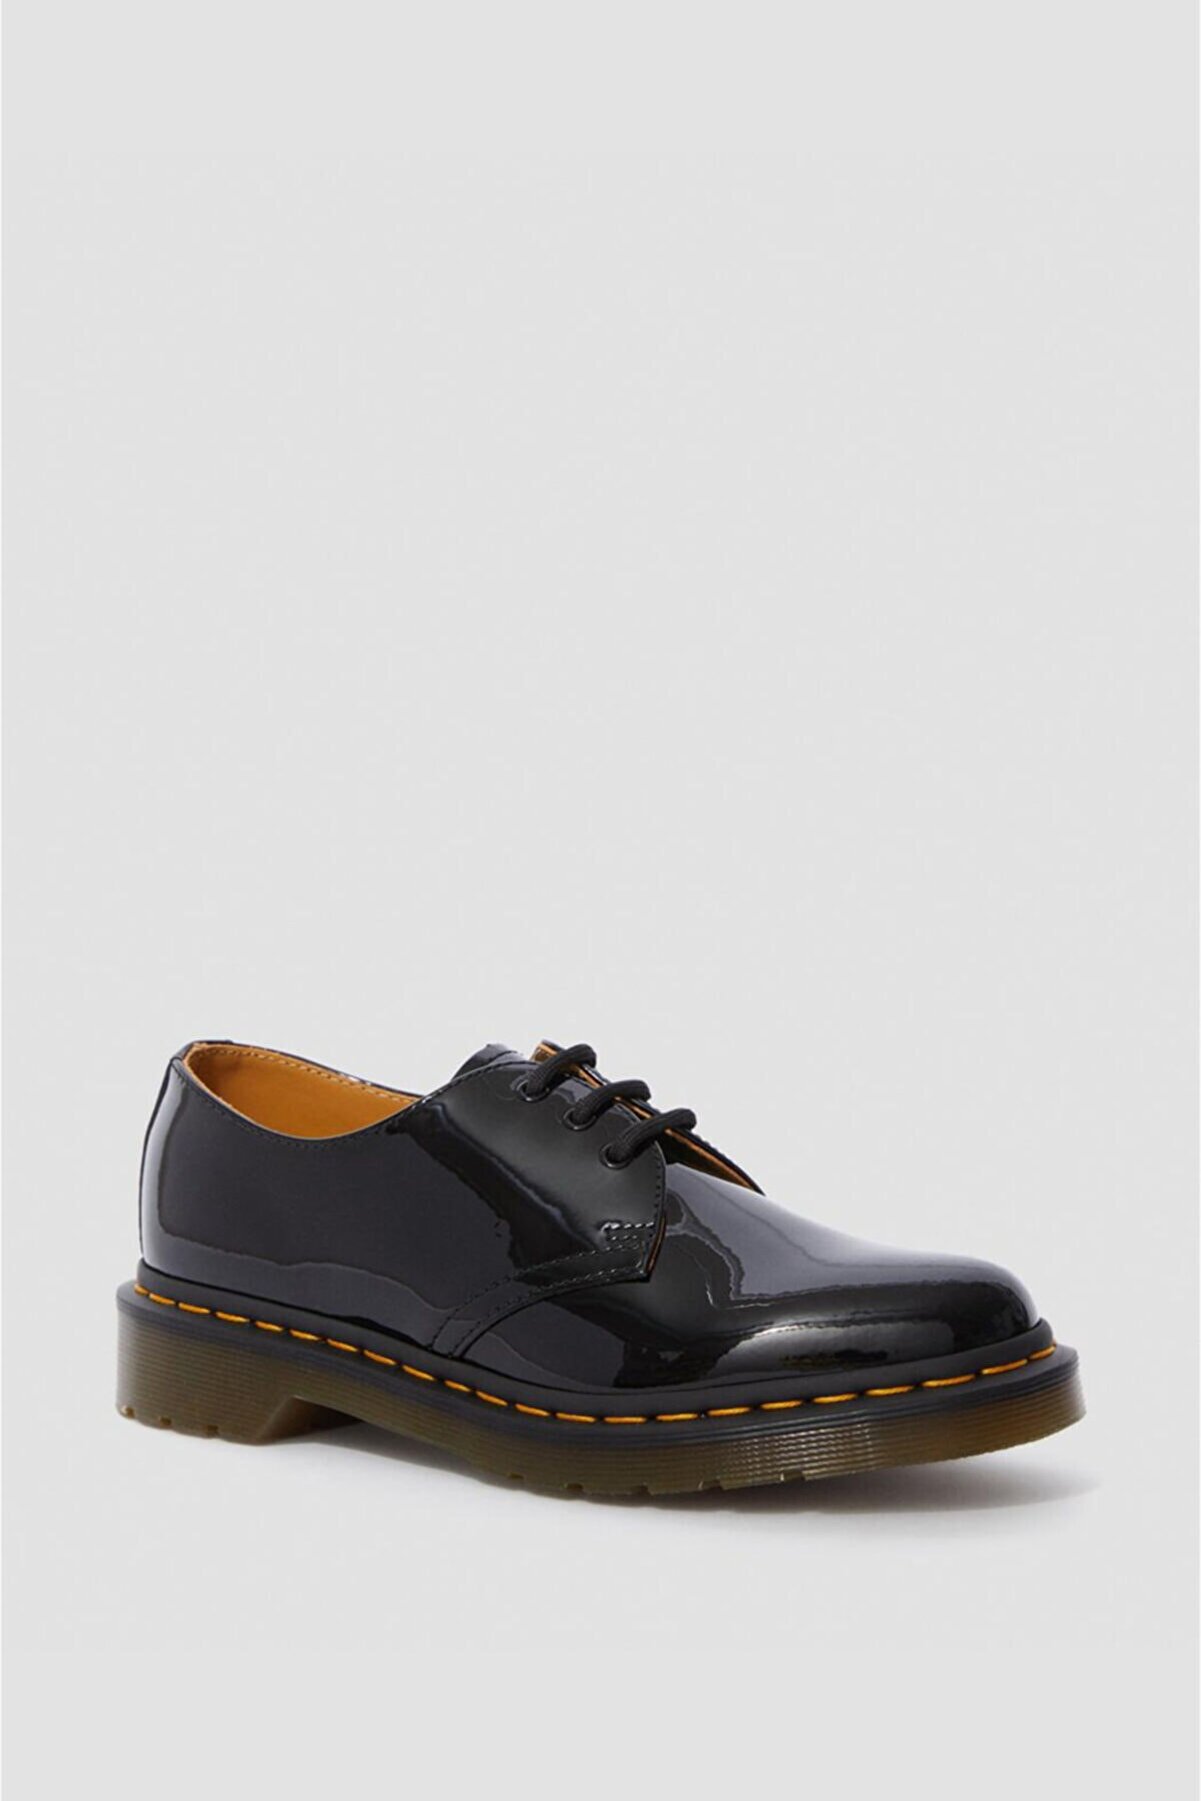 Dr Martens Kadın Siyah Klasik Ayakkabı 193DRMKAYB10084001_D900